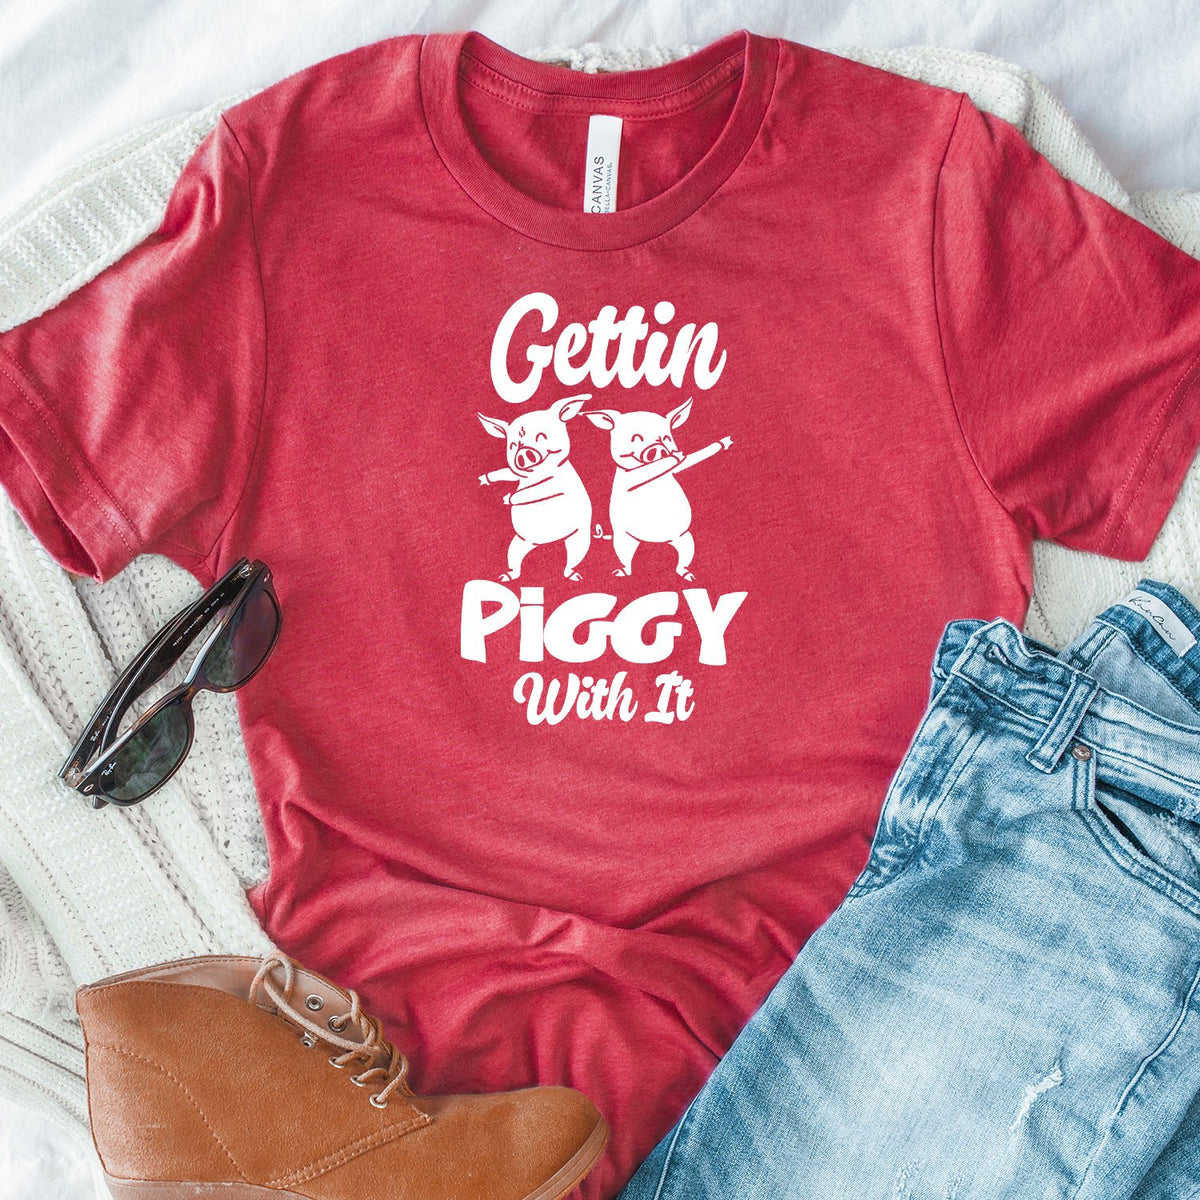 Gettin Piggy With It - Short Sleeve Tee Shirt